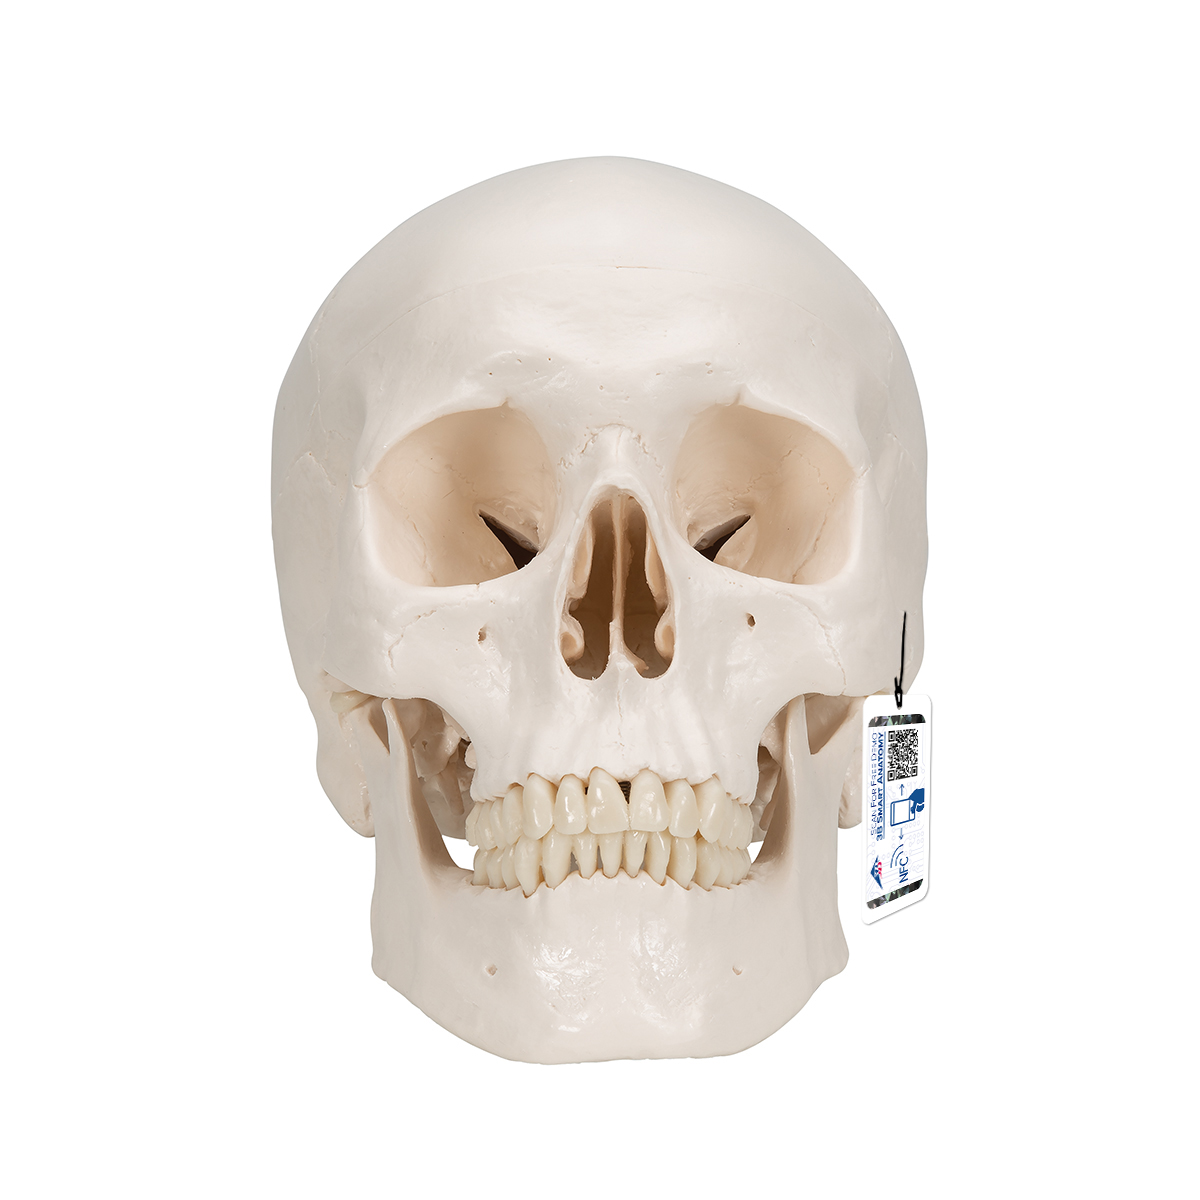 Menschliches Schädel Modell "Klassik" mit Gehirn, 8-teilig - 3B Smart Anatomy, Bestellnummer 1020162, A20/9, 3B Scientific